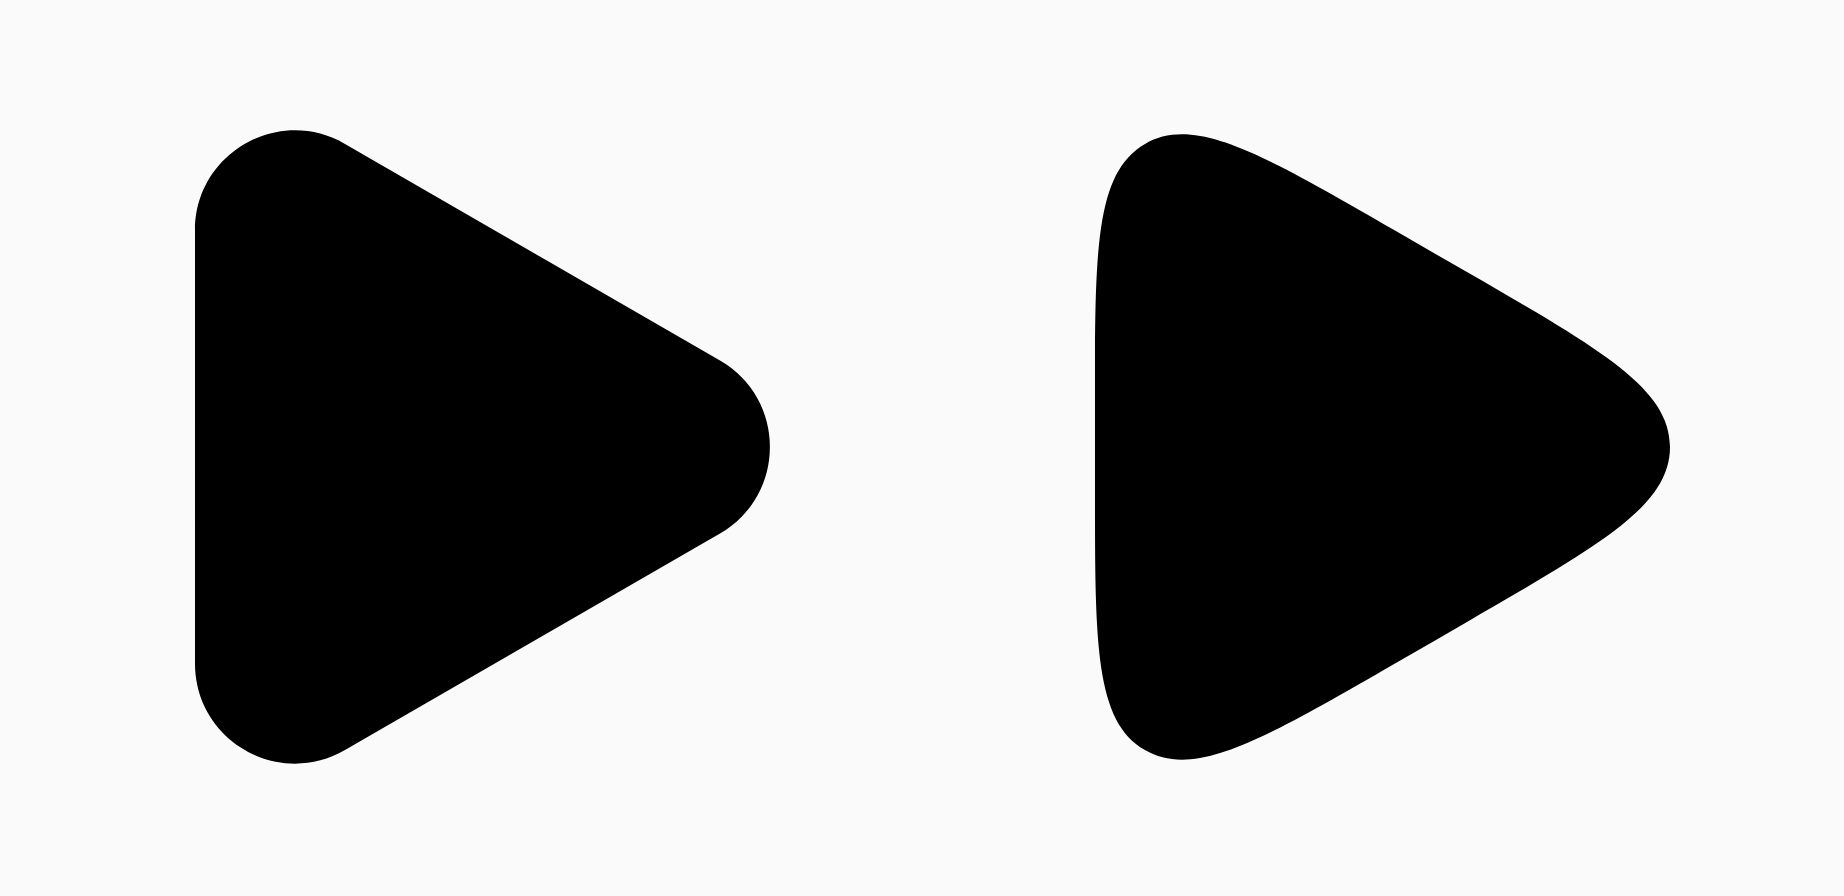 兩個黑色三角形顯示平滑參數的差異。